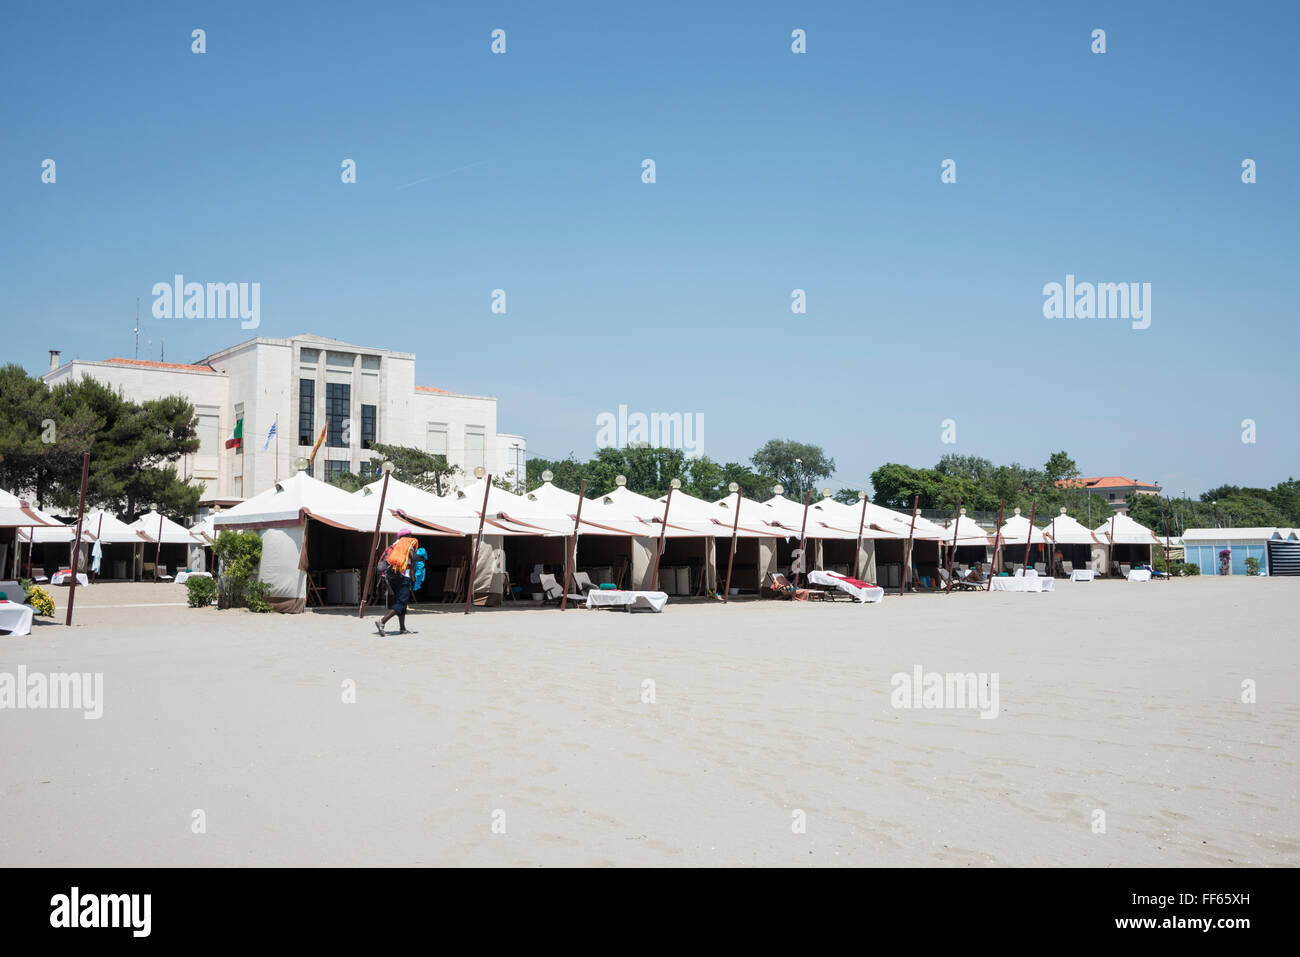 La larga playa de arena con chalets enfrente del Palazzo del Cinema del Lido di Venezia en Lungomare Guglielmo Marconi, Lido di V Foto de stock